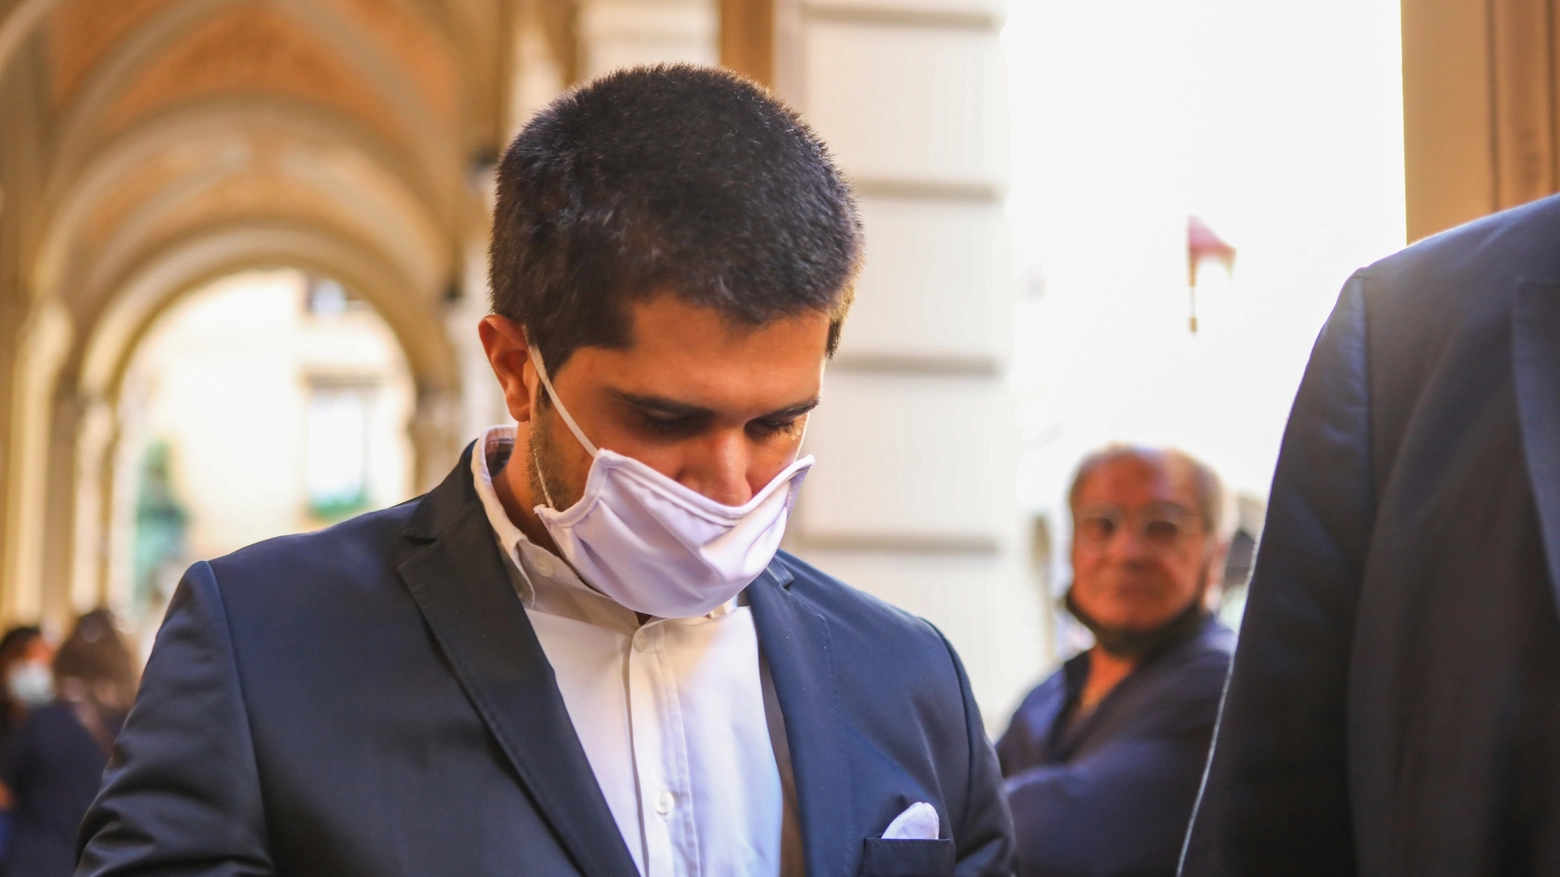 Luca Cavazza, indagato per l'inchiesta Villa Inferno, entra in tribunale (foto Schicchi)